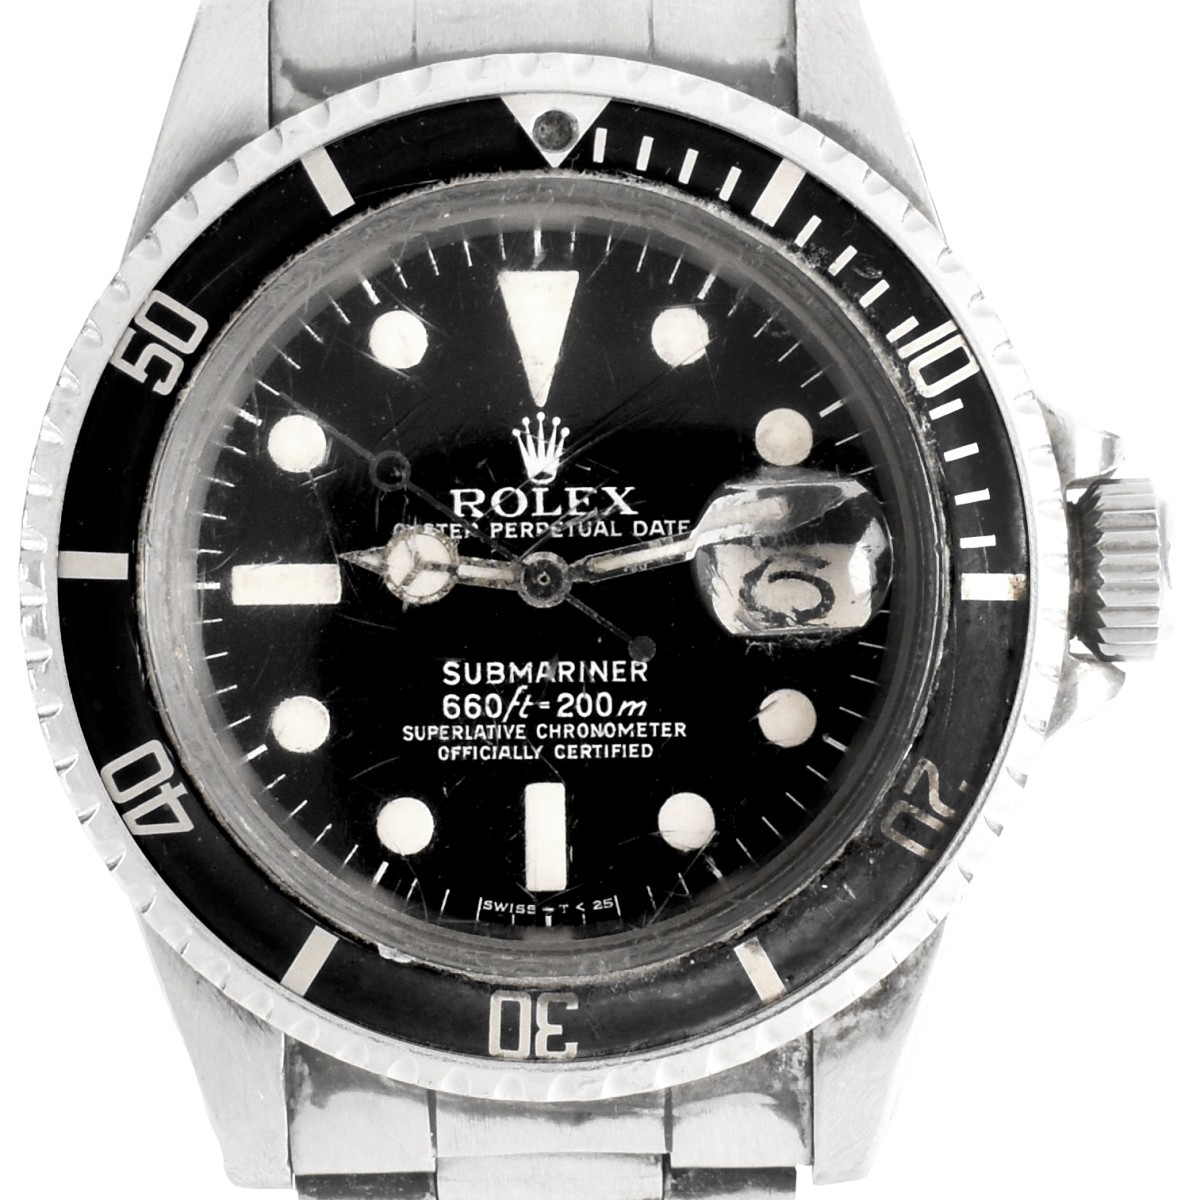 Vintage Rolex Submariner Date Watch